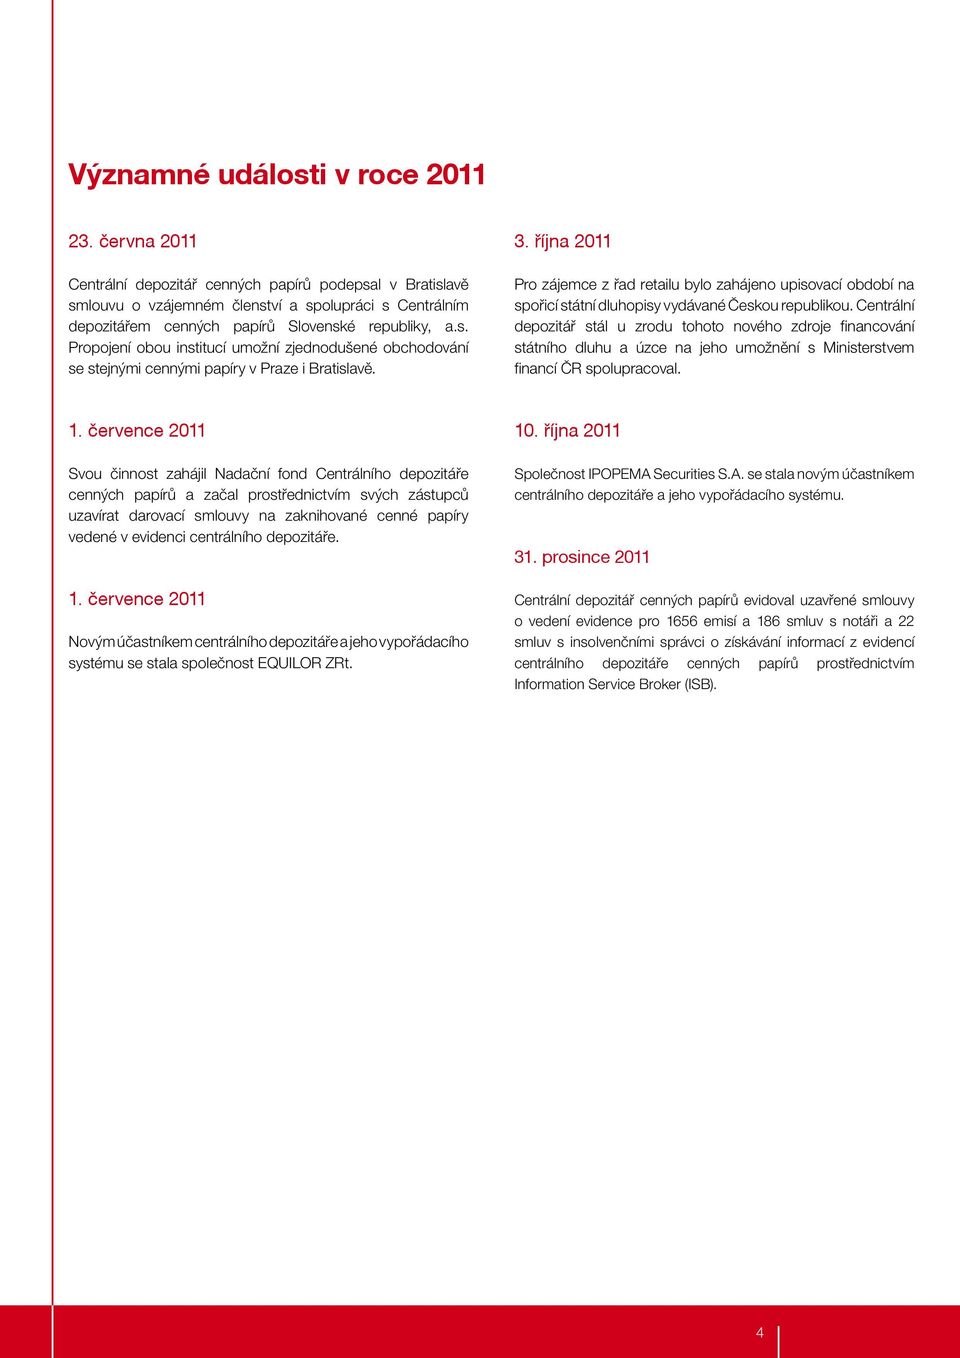 3. října 2011 Pro zájemce z řad retailu bylo zahájeno upisovací období na spořicí státní dluhopisy vydávané Českou republikou.